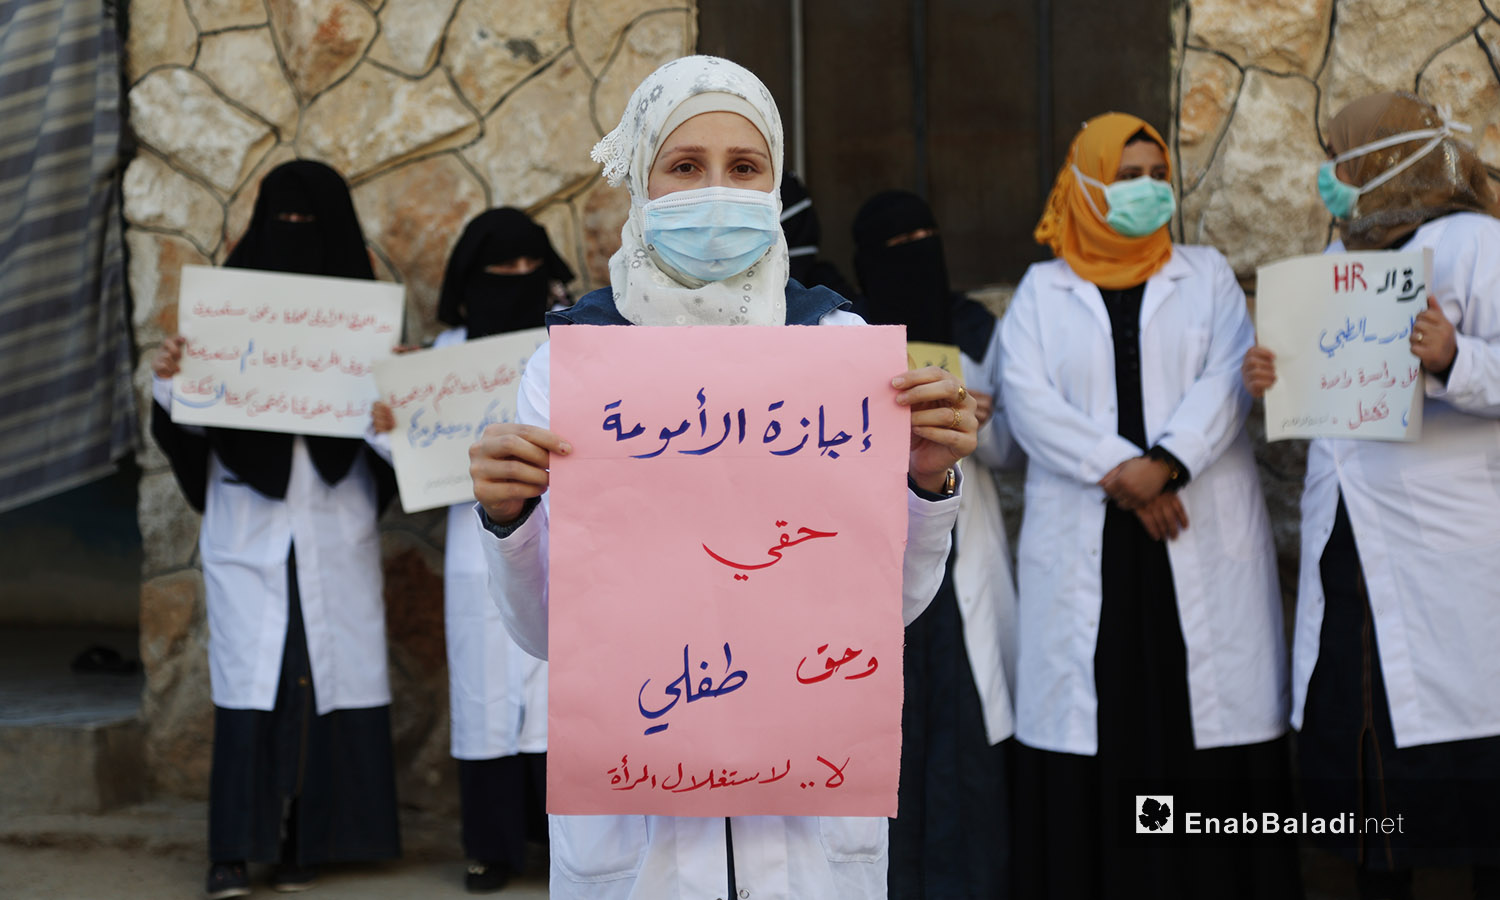 امرأة تحمل لافتة للمطلبة بإجازة الأمومة بوقفة احتجاجية في المشفى النسائي بكفر تخاريم بريف أدلب -11 تشرين الأول 2020 (عنب بلدي /يوسف غريبي)